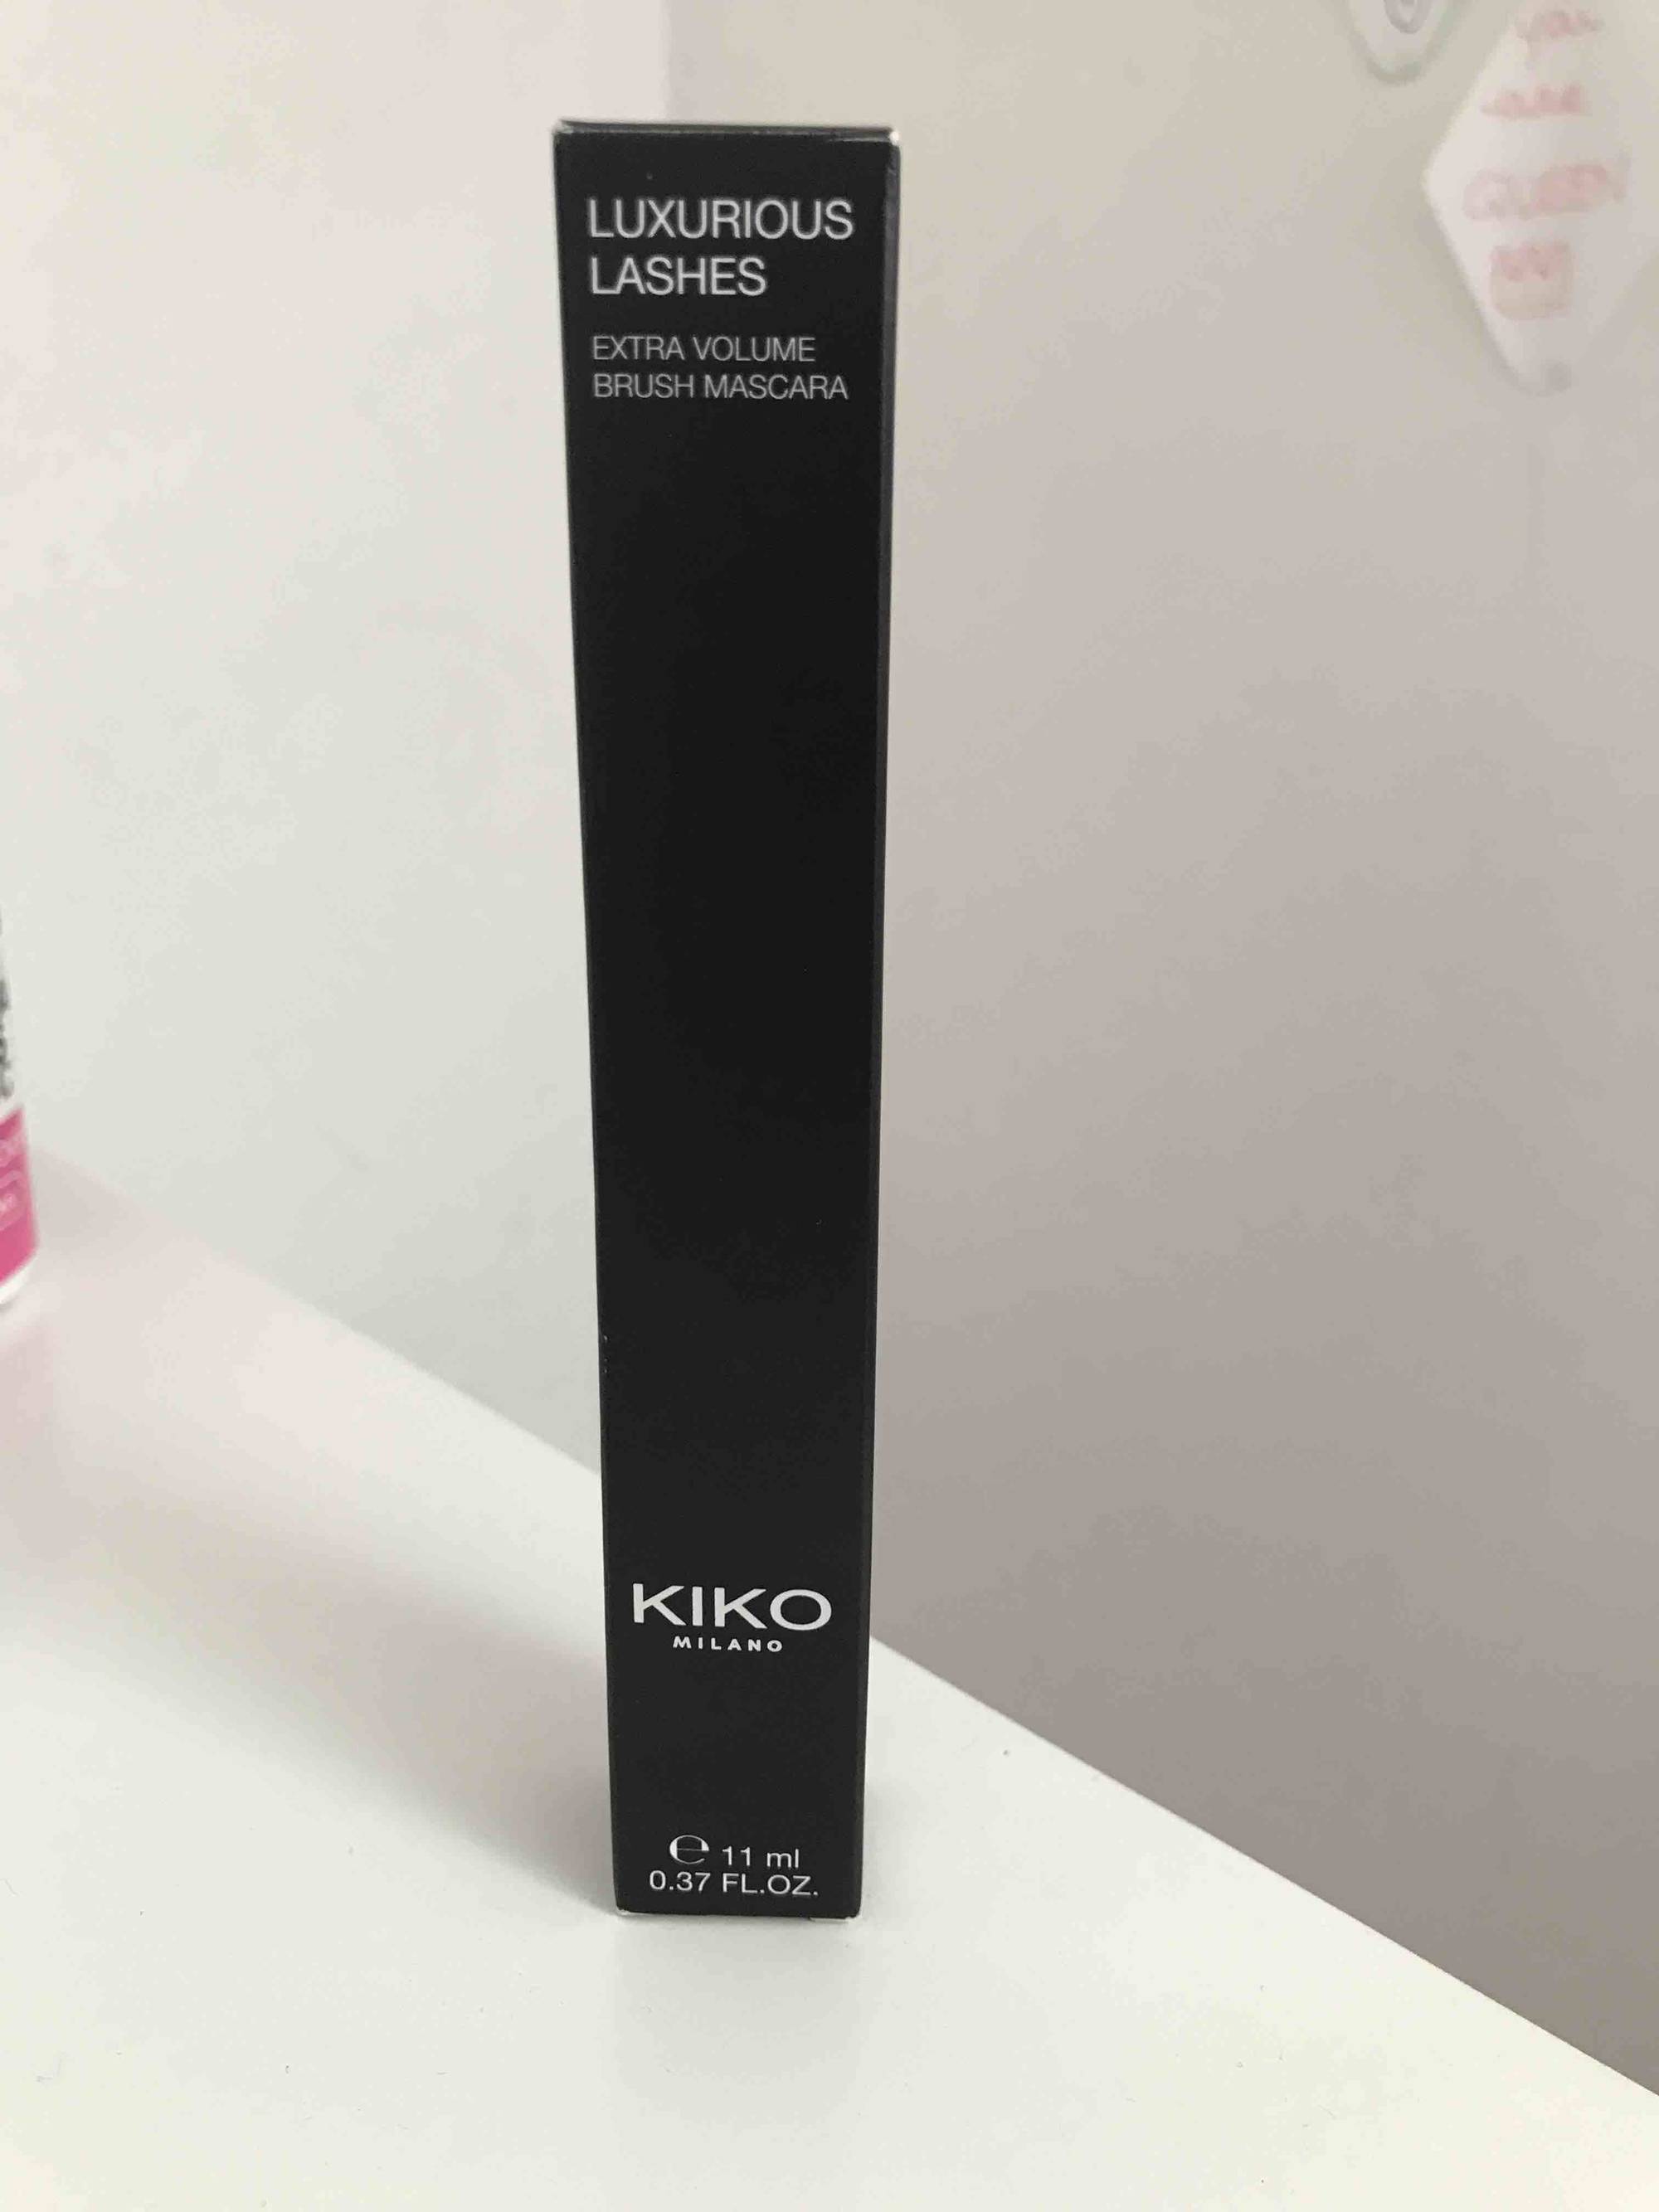 KIKO - Luxurious lashes - Extra volume brush mascara